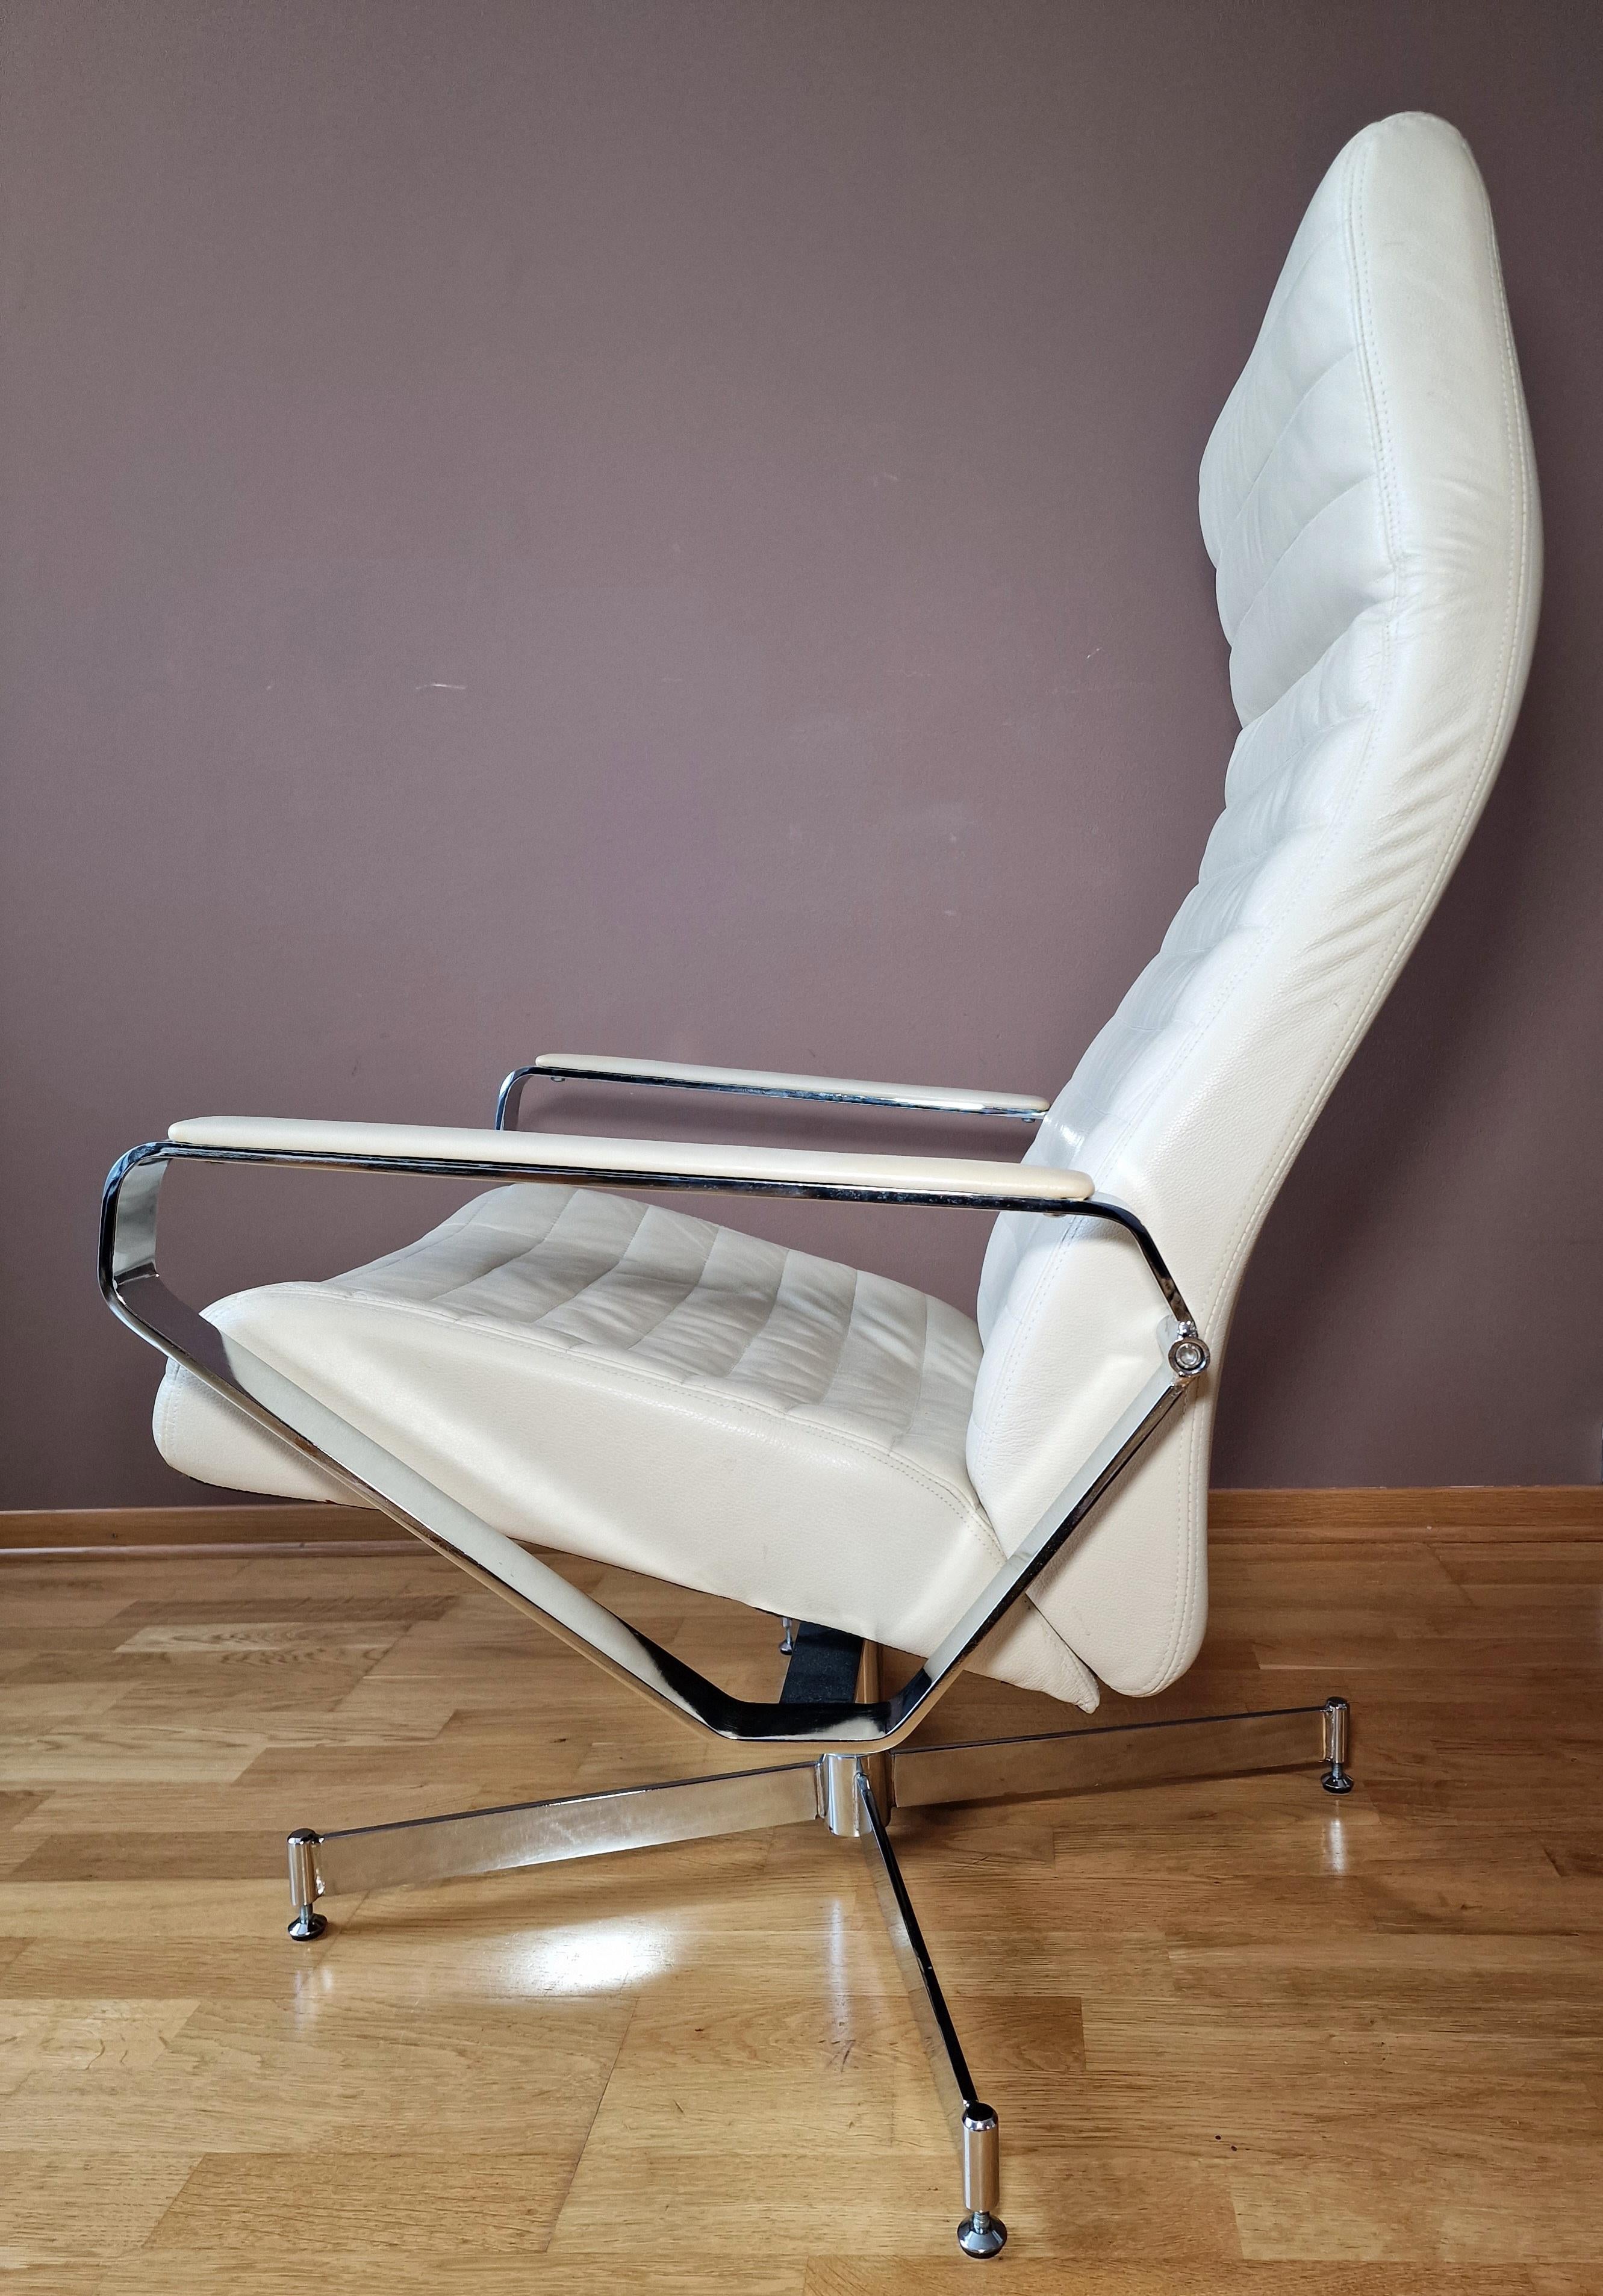 Chaise très confortable en cuir, avec de nombreux réglages !
Rotation de 360°.
La chaise est en bon état.